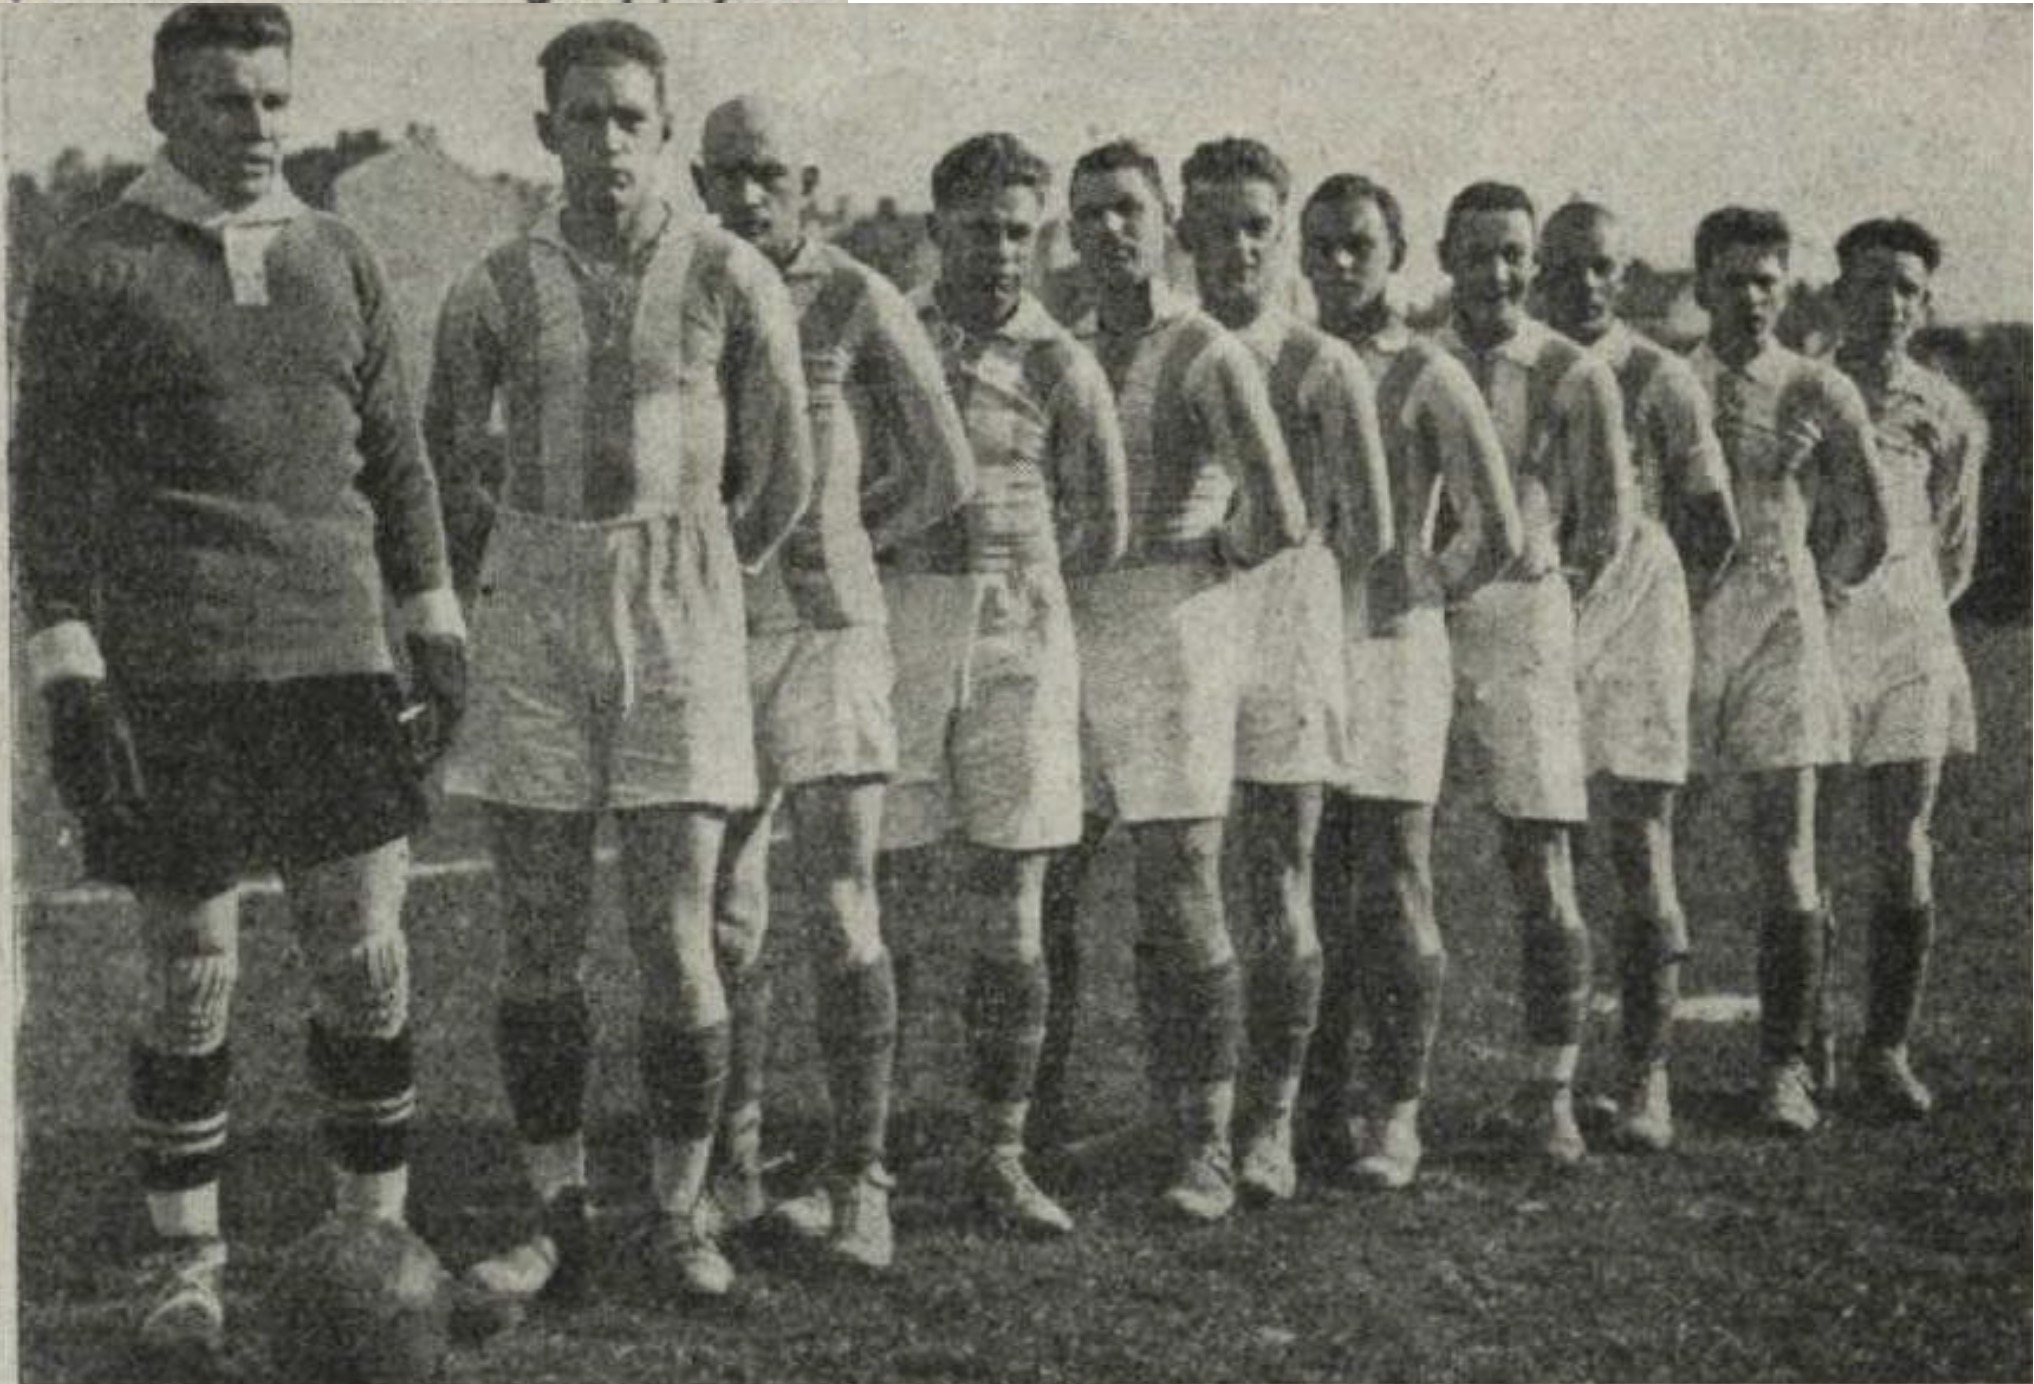 RFK 1925